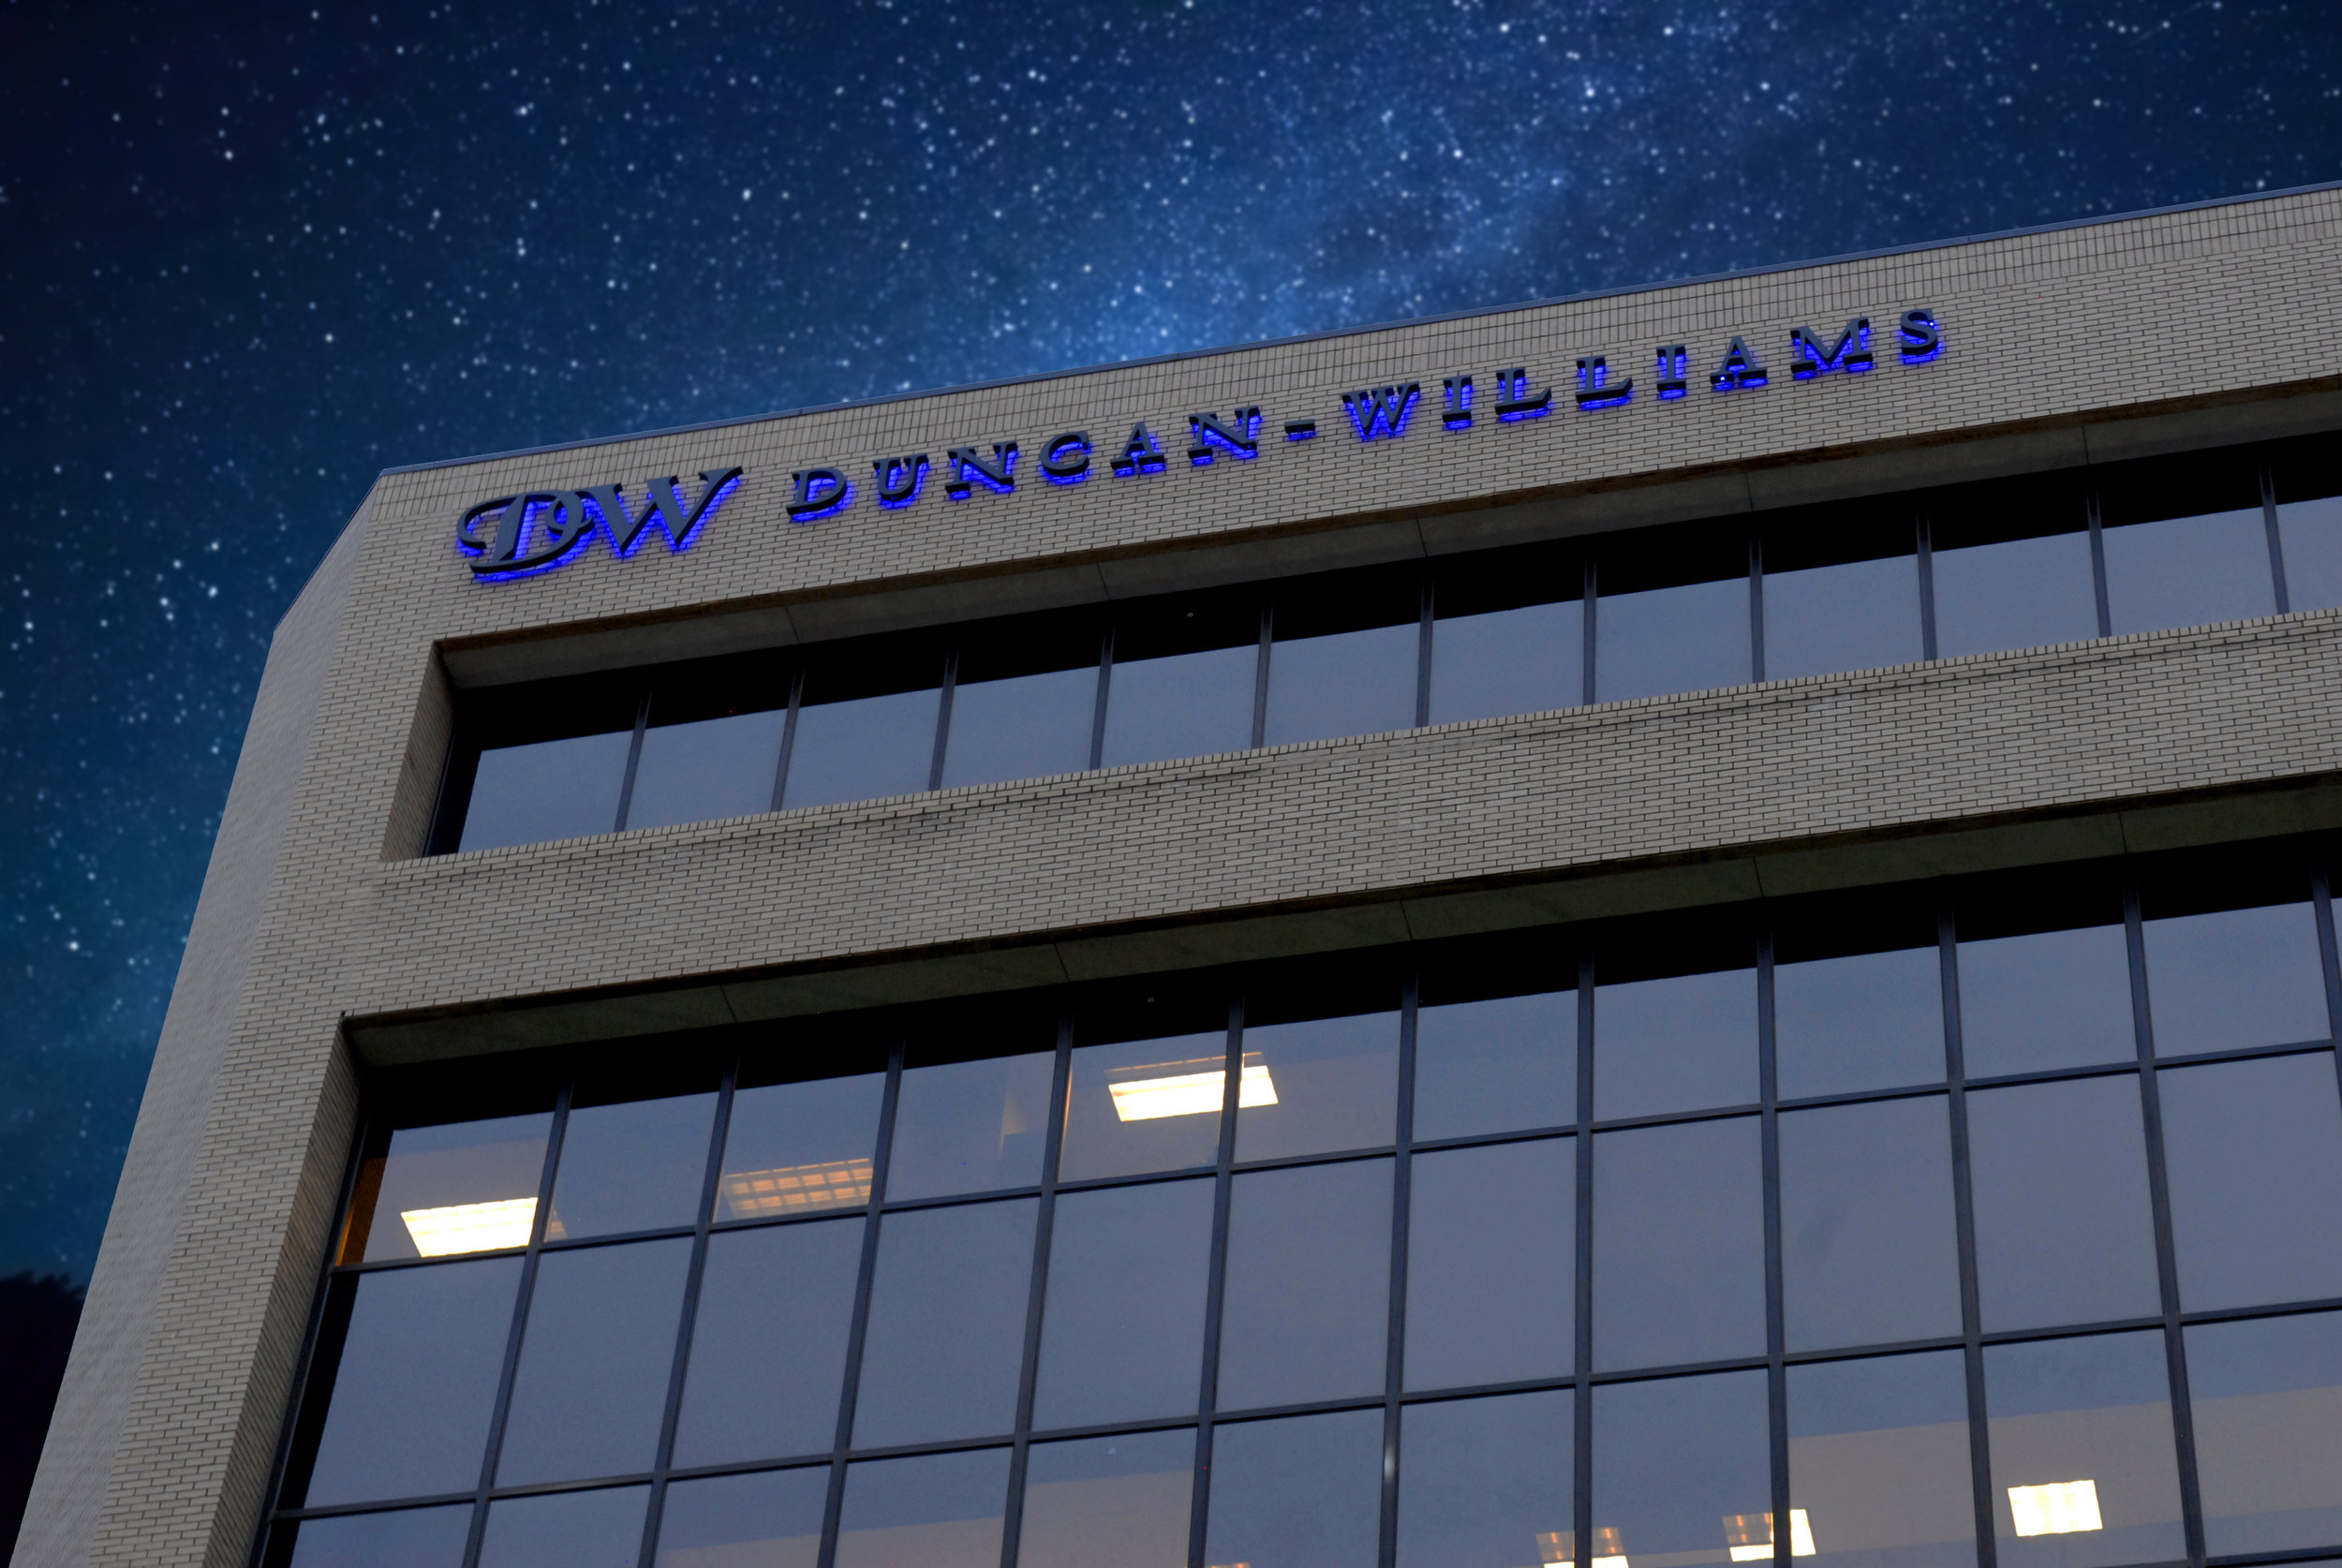 Duncan Williams Illuminated Building Sign